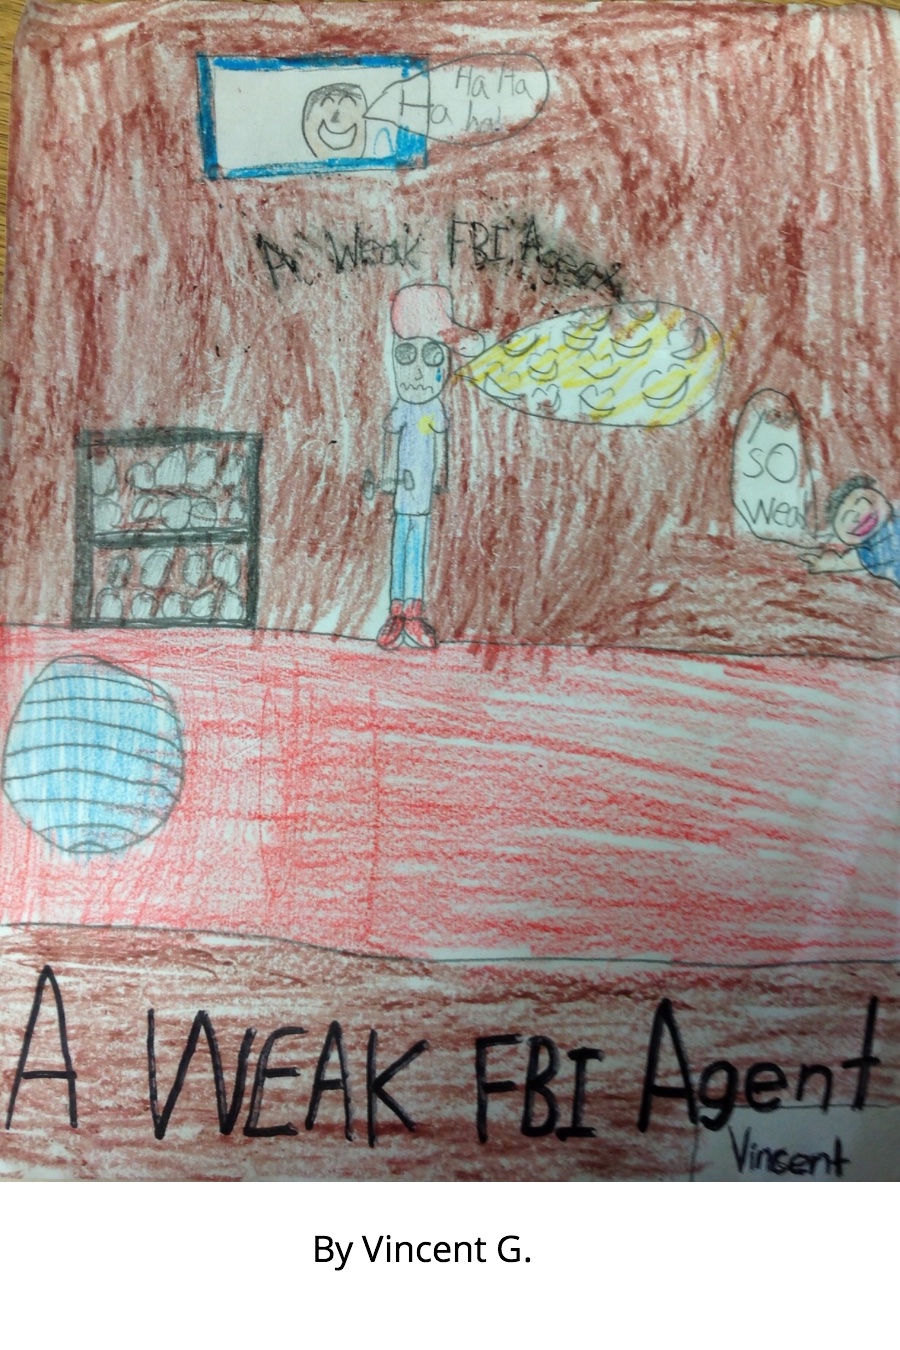 A Weak FBI Agent by Vincent G